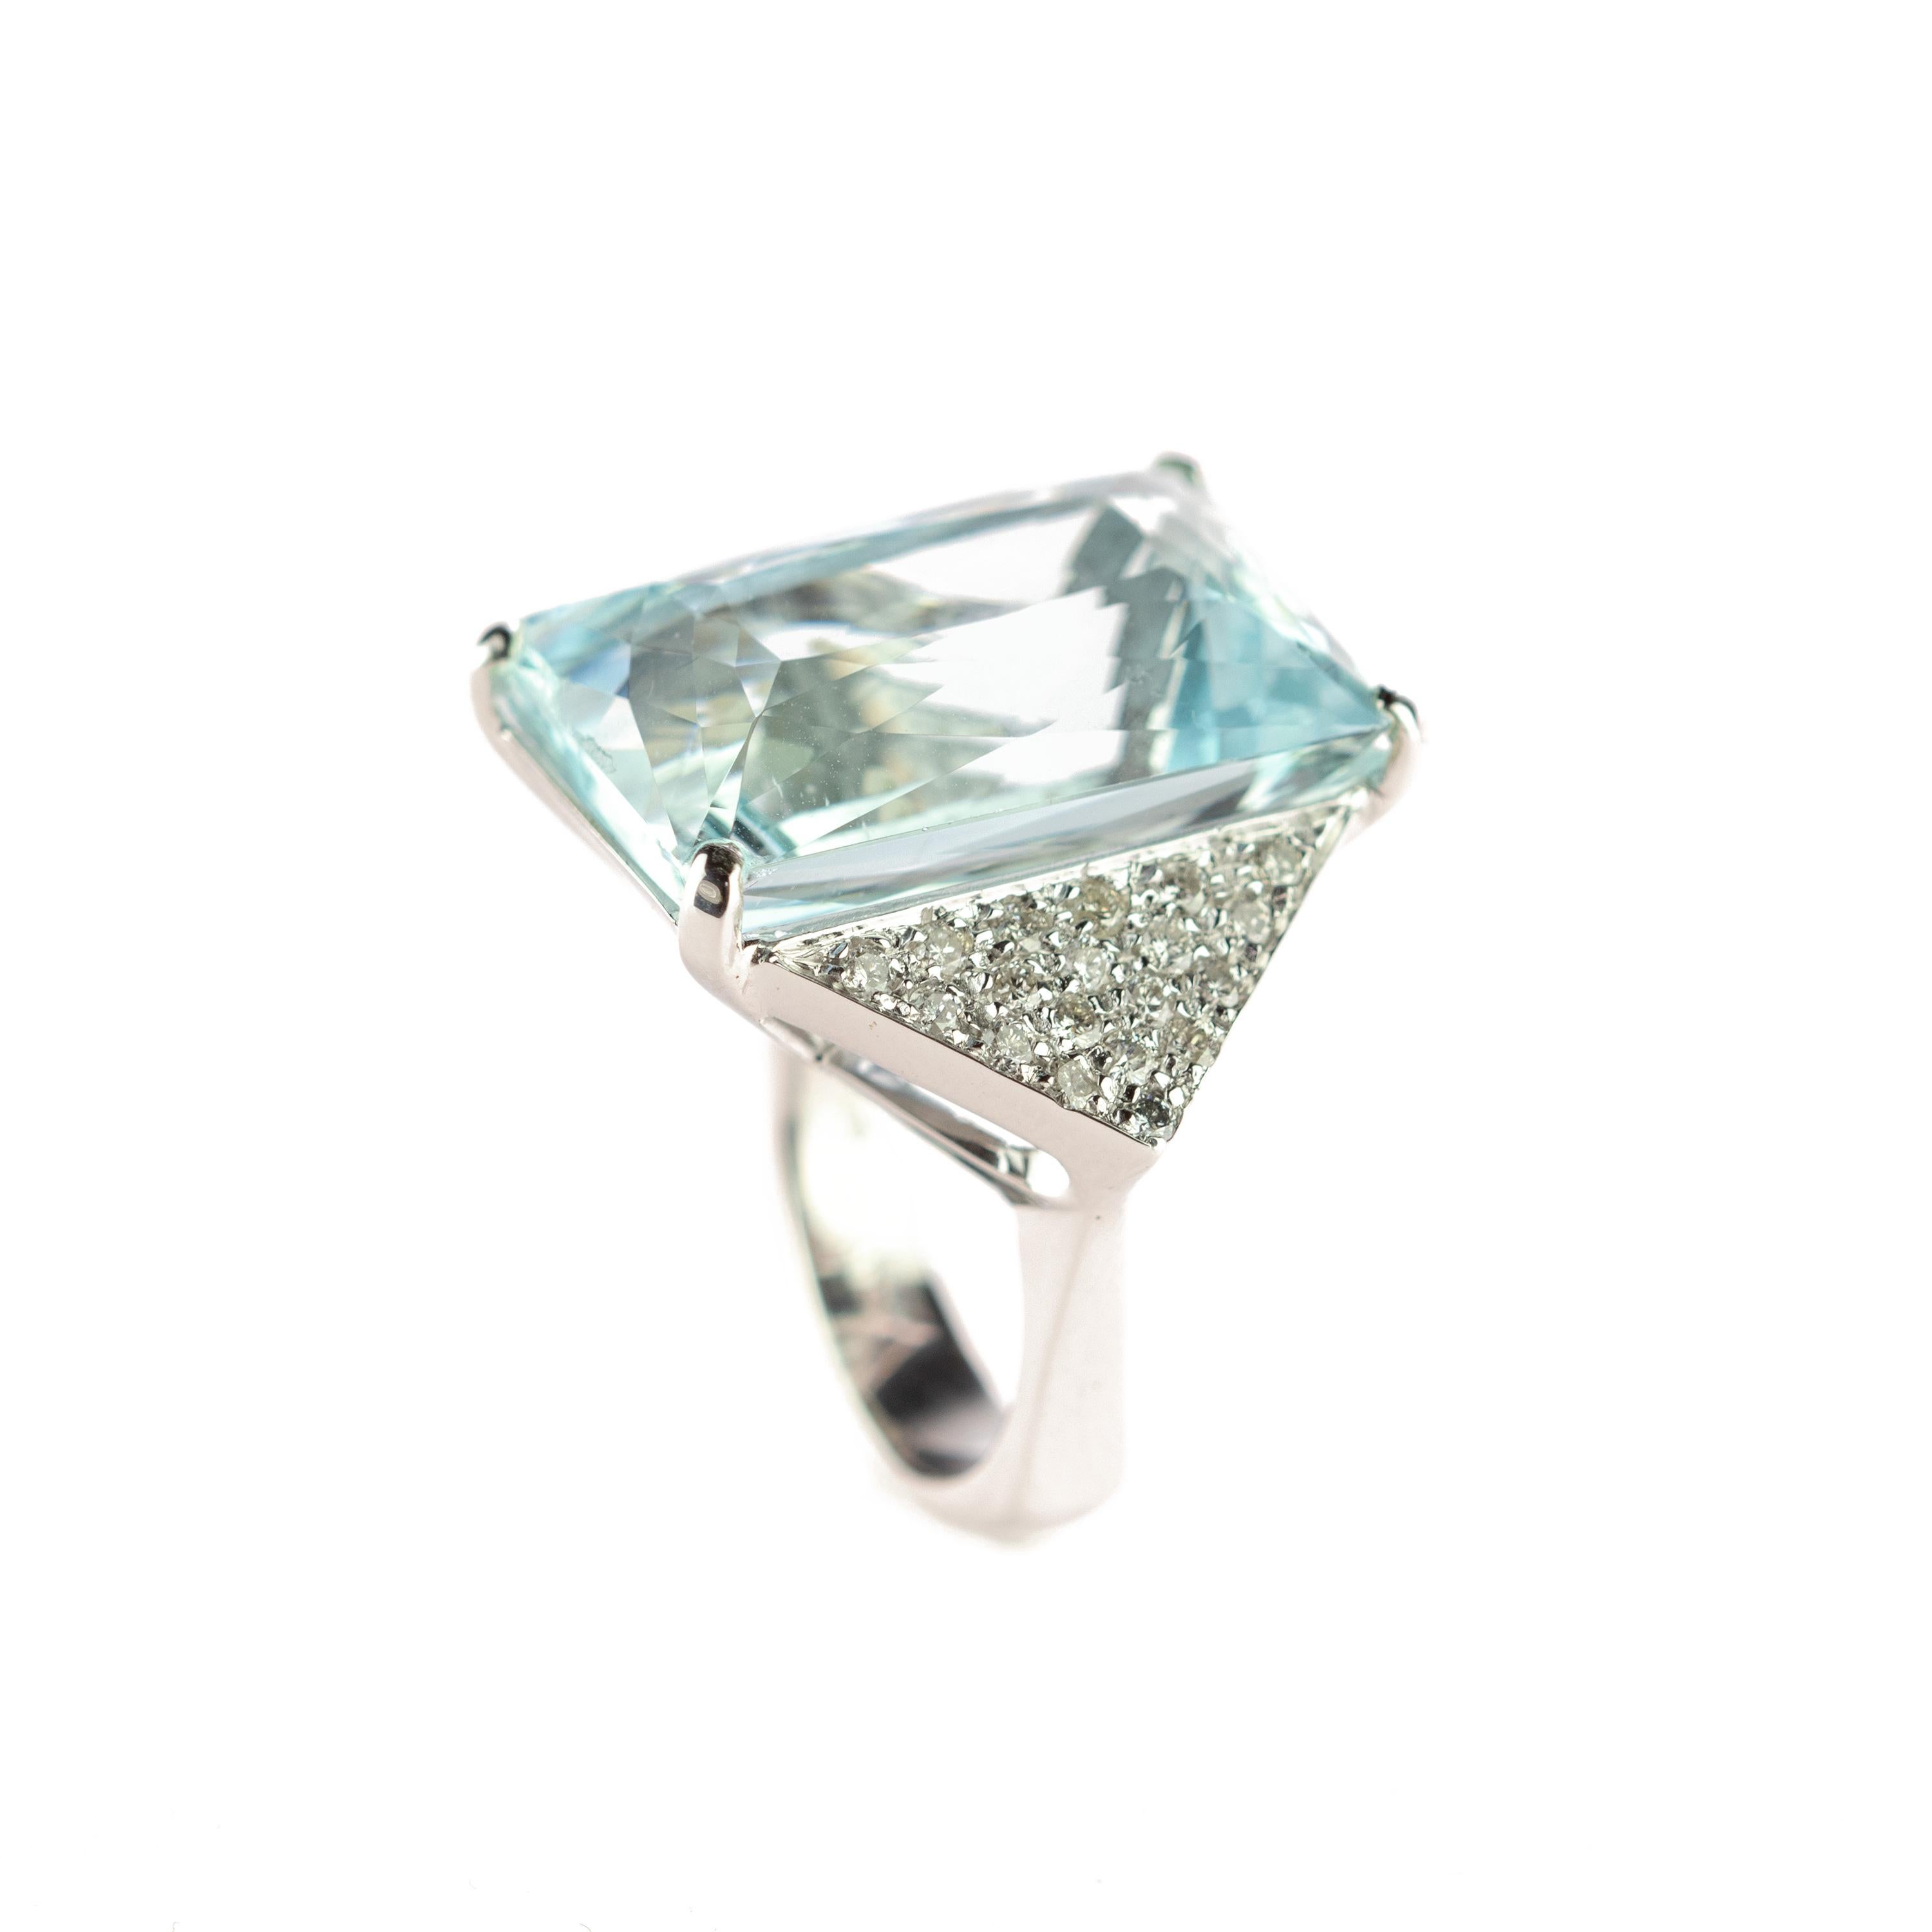 Ein beeindruckender, klarer, natürlicher Aquamarin-Edelstein und ein Diamant auf einem 18-karätigen Weißgoldring (34,5 Karat). Dieser epische Statement-Ring ist ein herausragendes Beispiel für Farbe und italienische Handwerkskunst.

Inspiriert durch